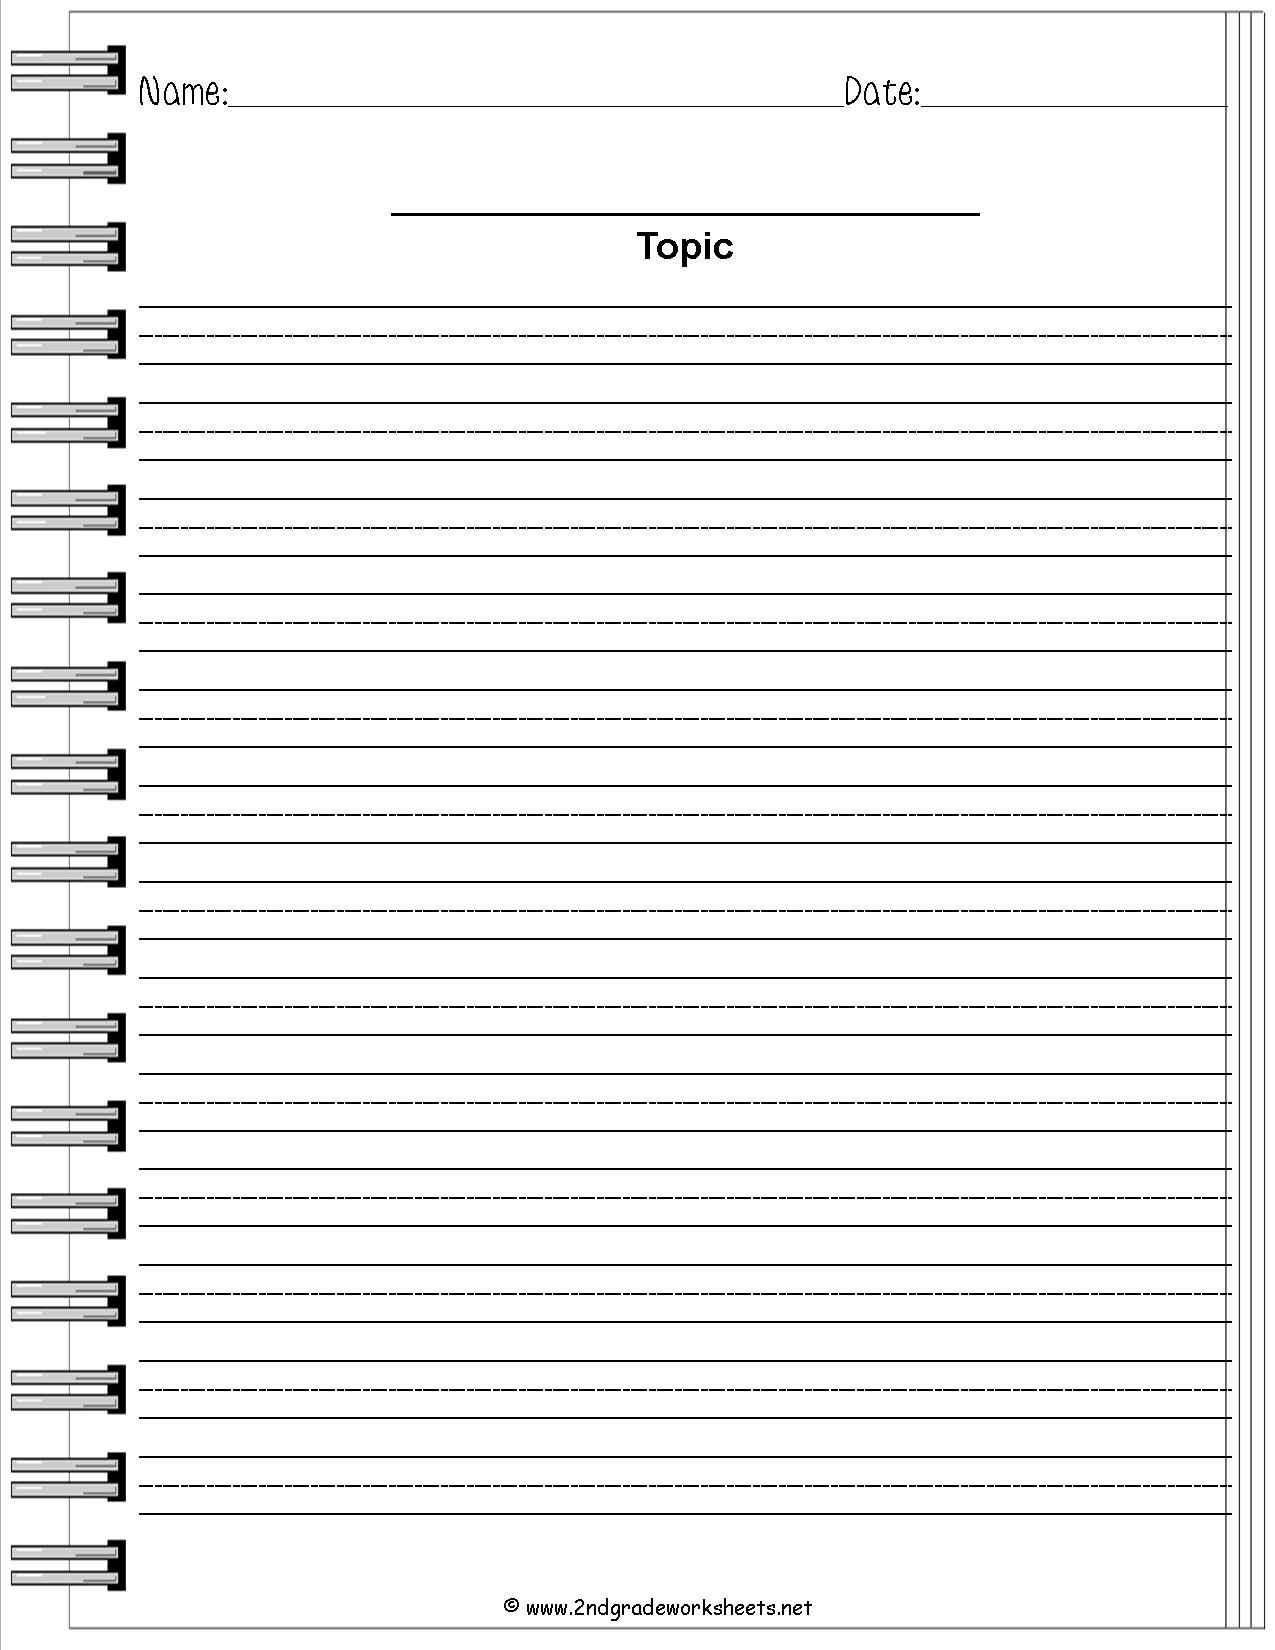 14-journal-prompt-worksheets-worksheeto